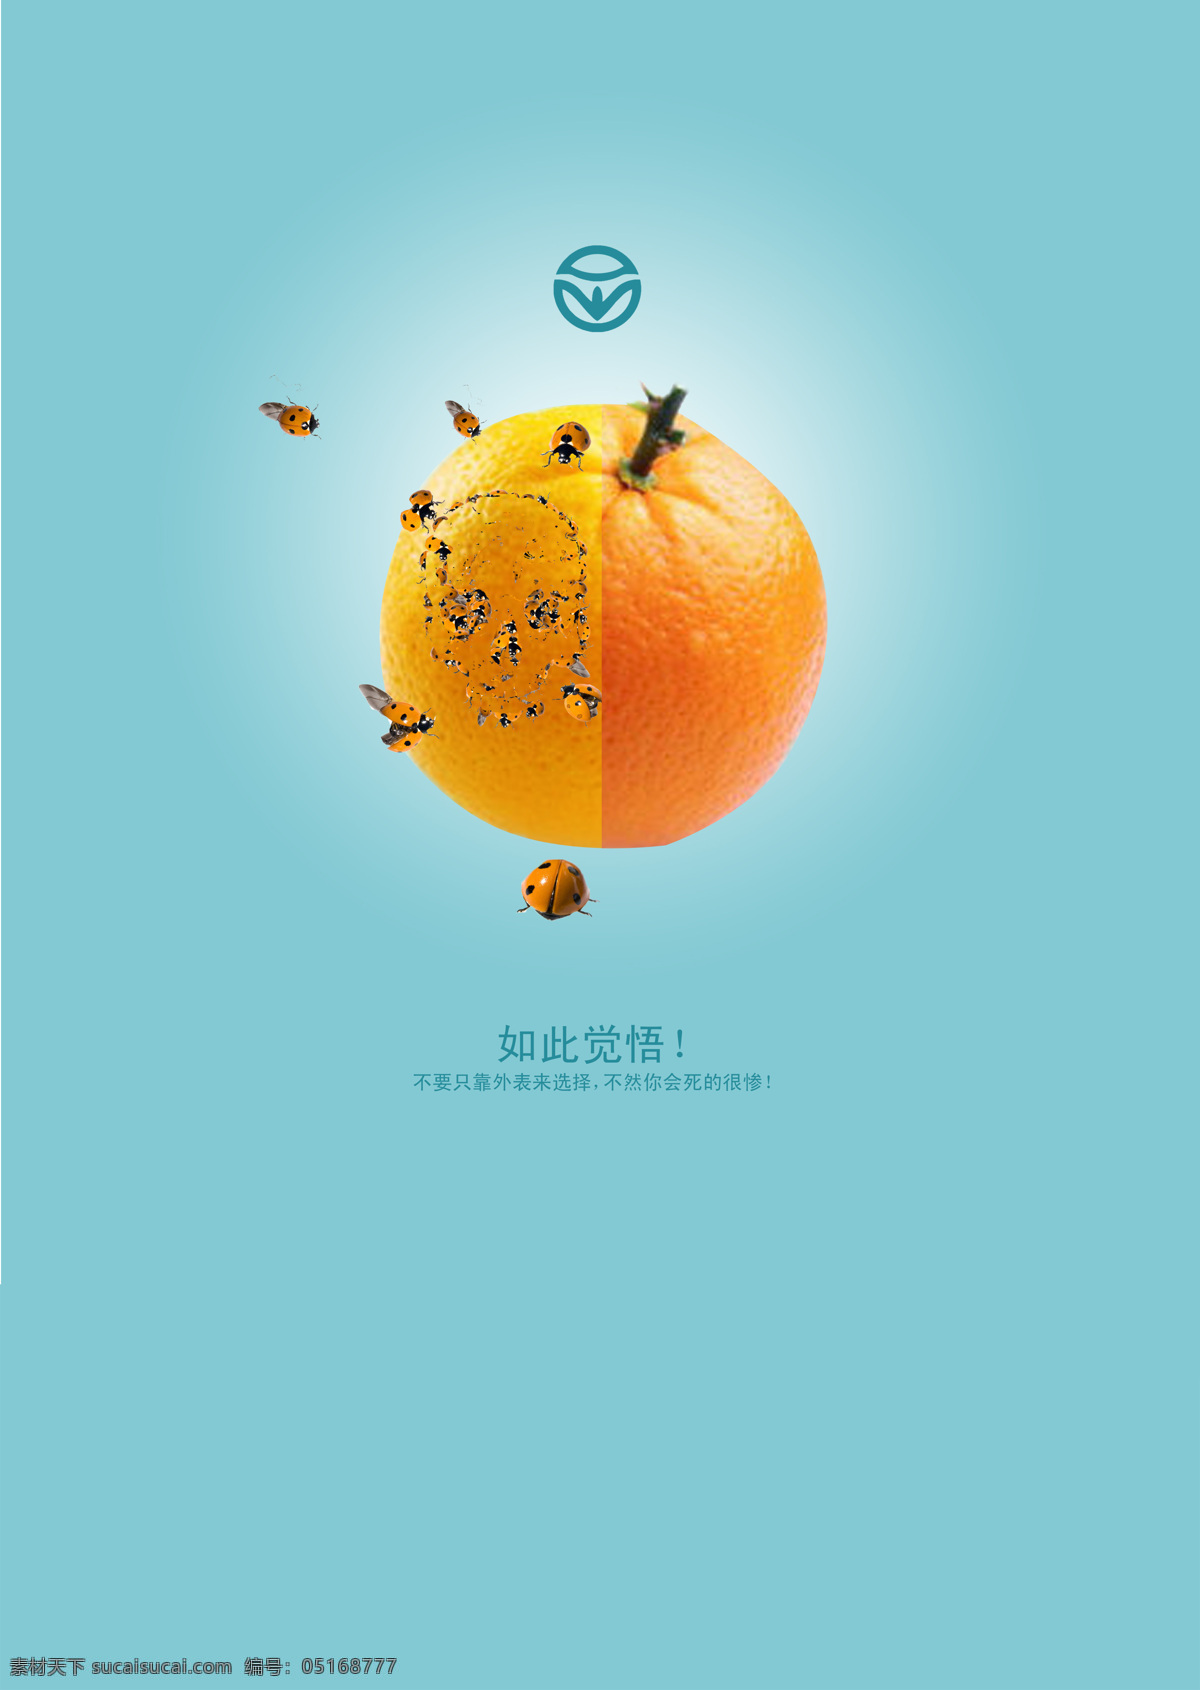 公益 广告 系列 橙子 蓝色底 绿色 绿色食品 瓢虫 食品 公益广告系列 招贴设计 展板 公益展板设计